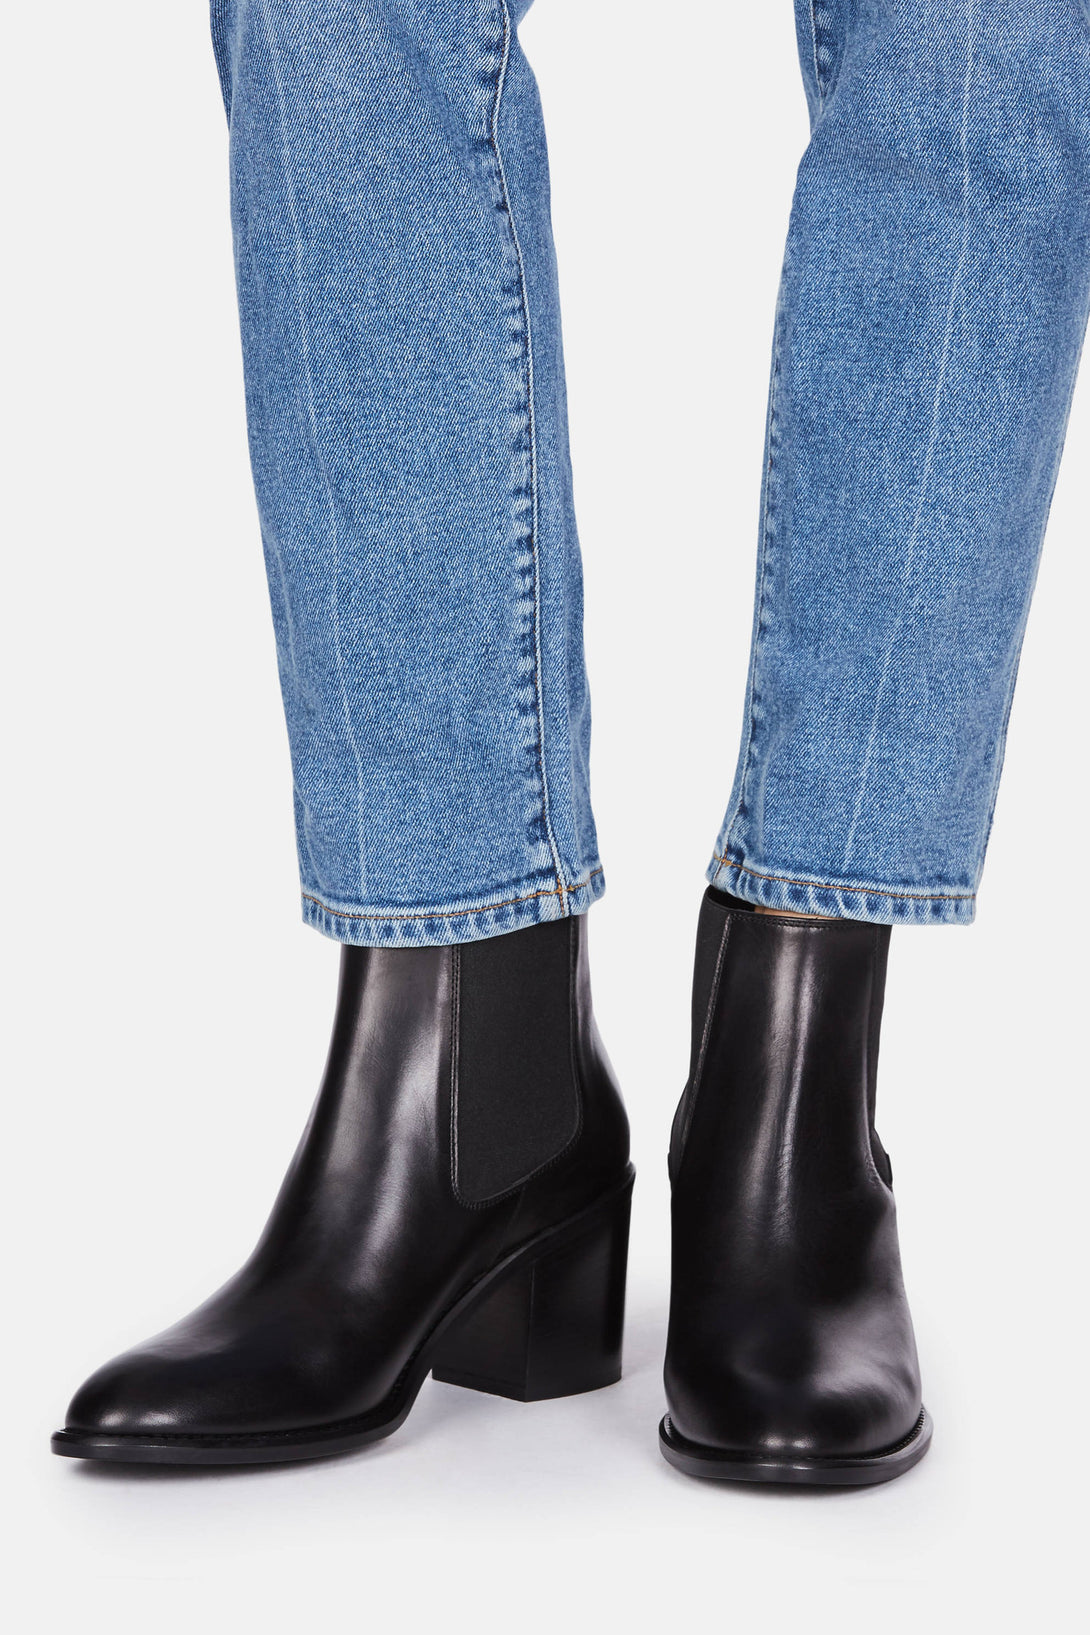 Buy > chelsea heeled boot > in stock